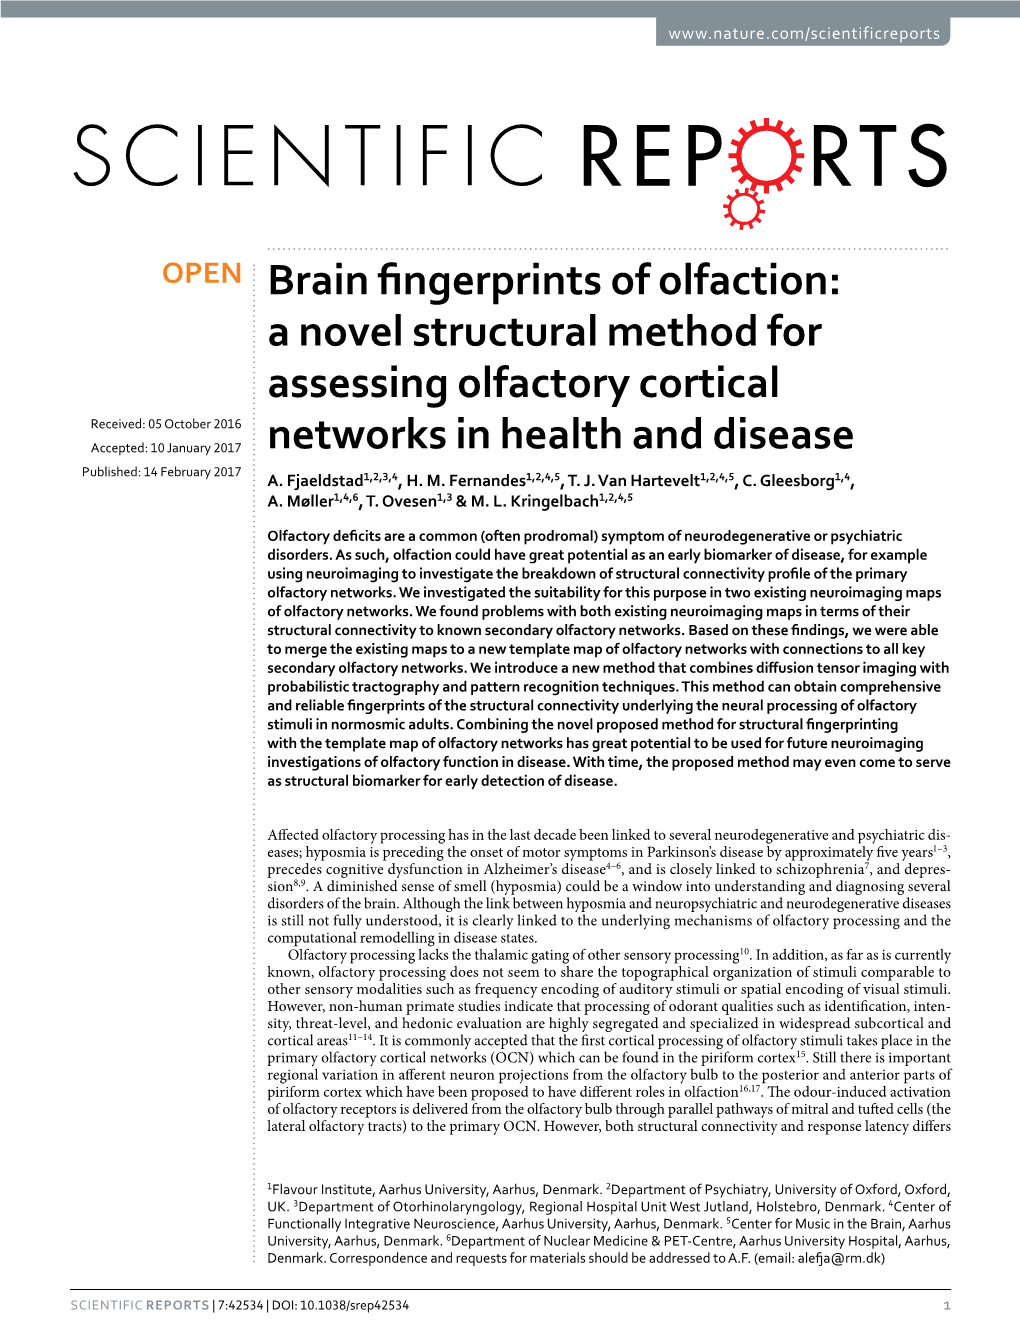 Brain Fingerprints of Olfaction: a Novel Structural Method for Assessing